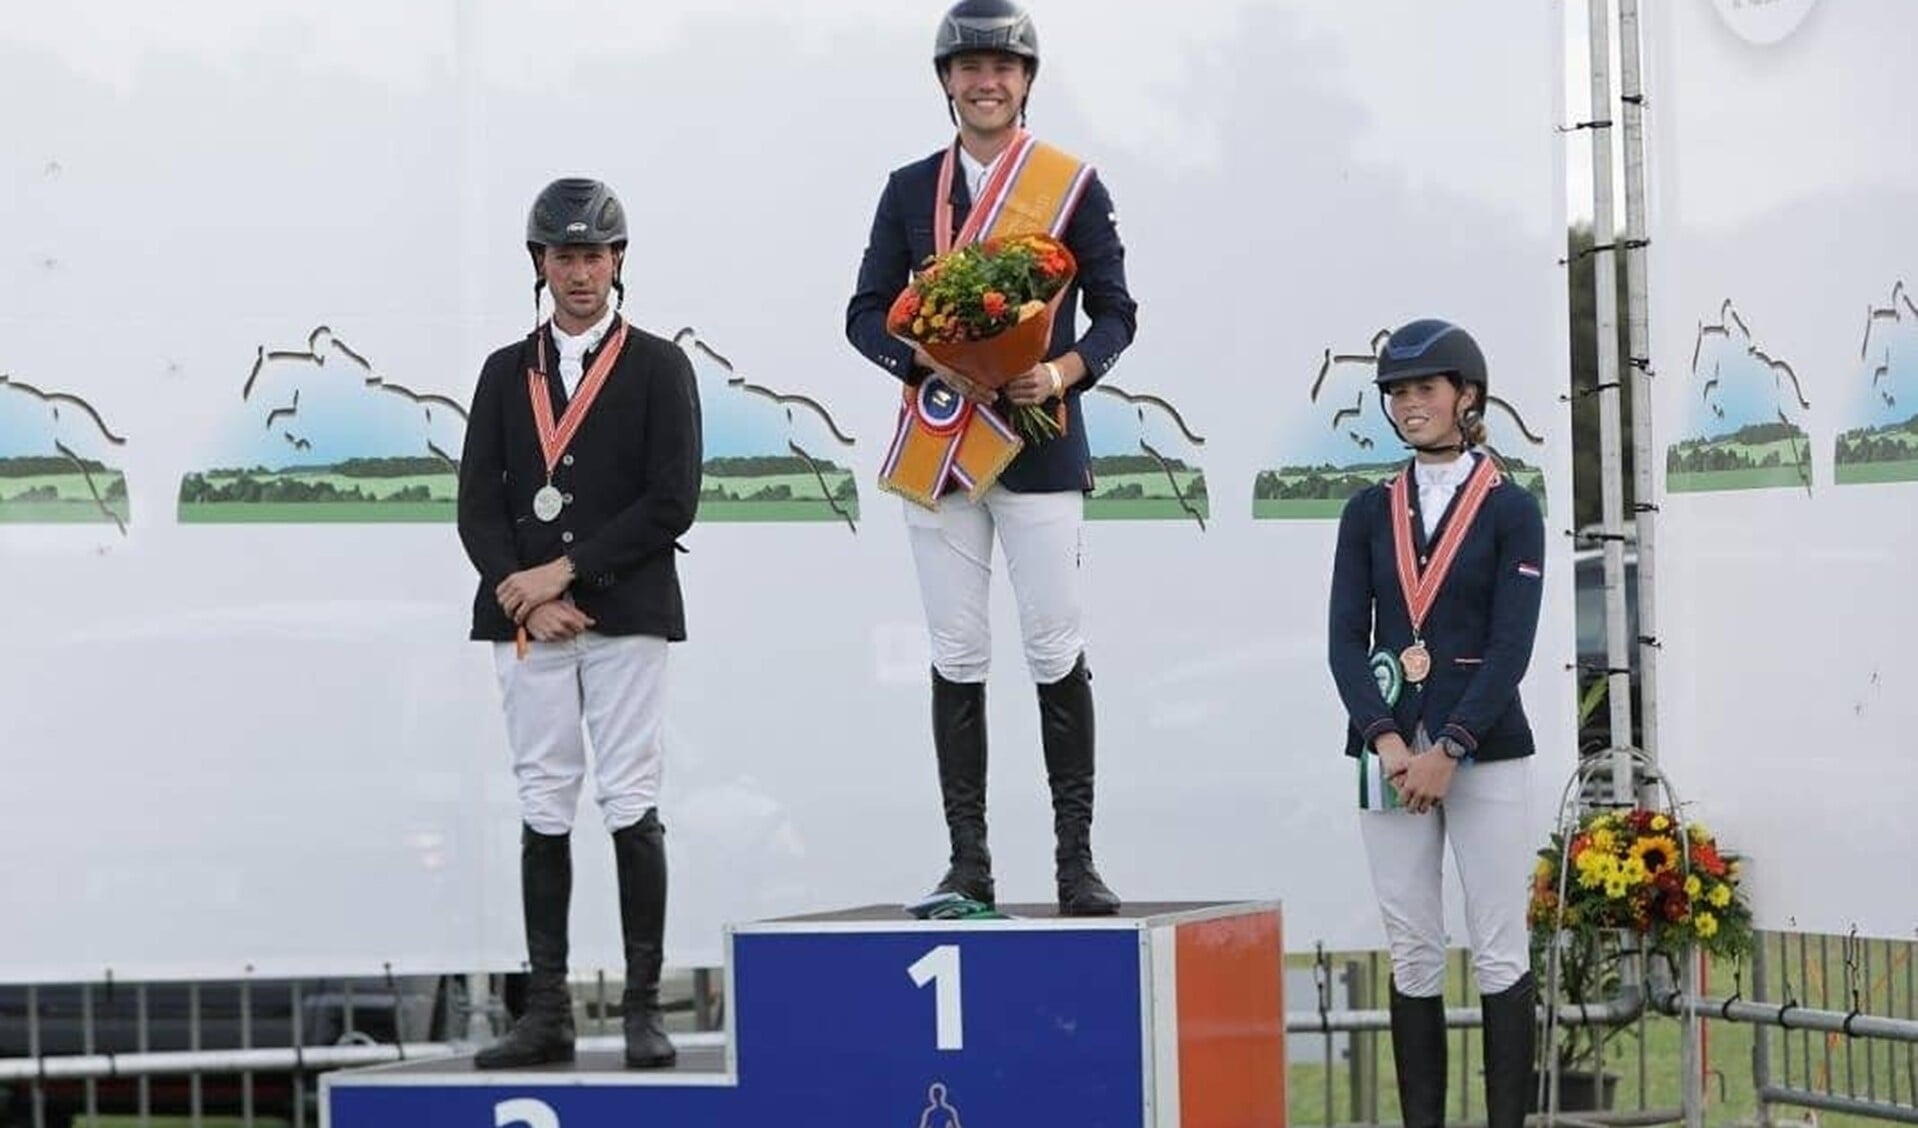 De Nederlands kampioen Gert-Jan Heinen op de hoogste trede van het podium, Stephan Hazeleger (links) en Janine van Sommeren (rechts). Foto: Jacquelien van Tartwijk